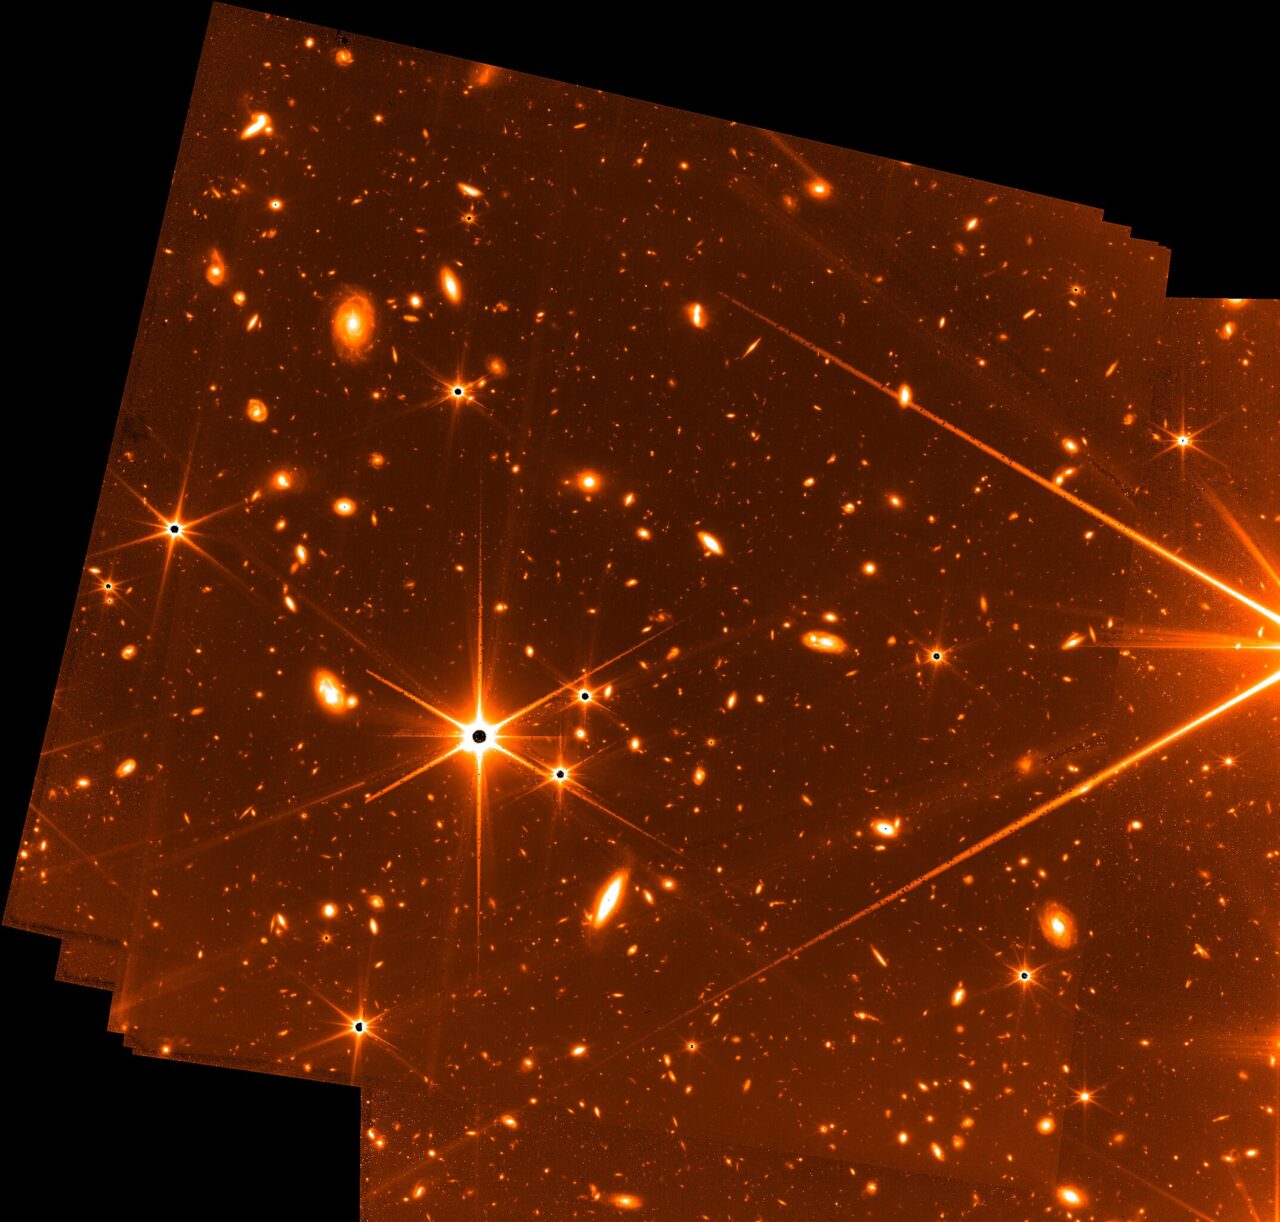 Imagem do FGS-NIRISS do Telescópio James Webb